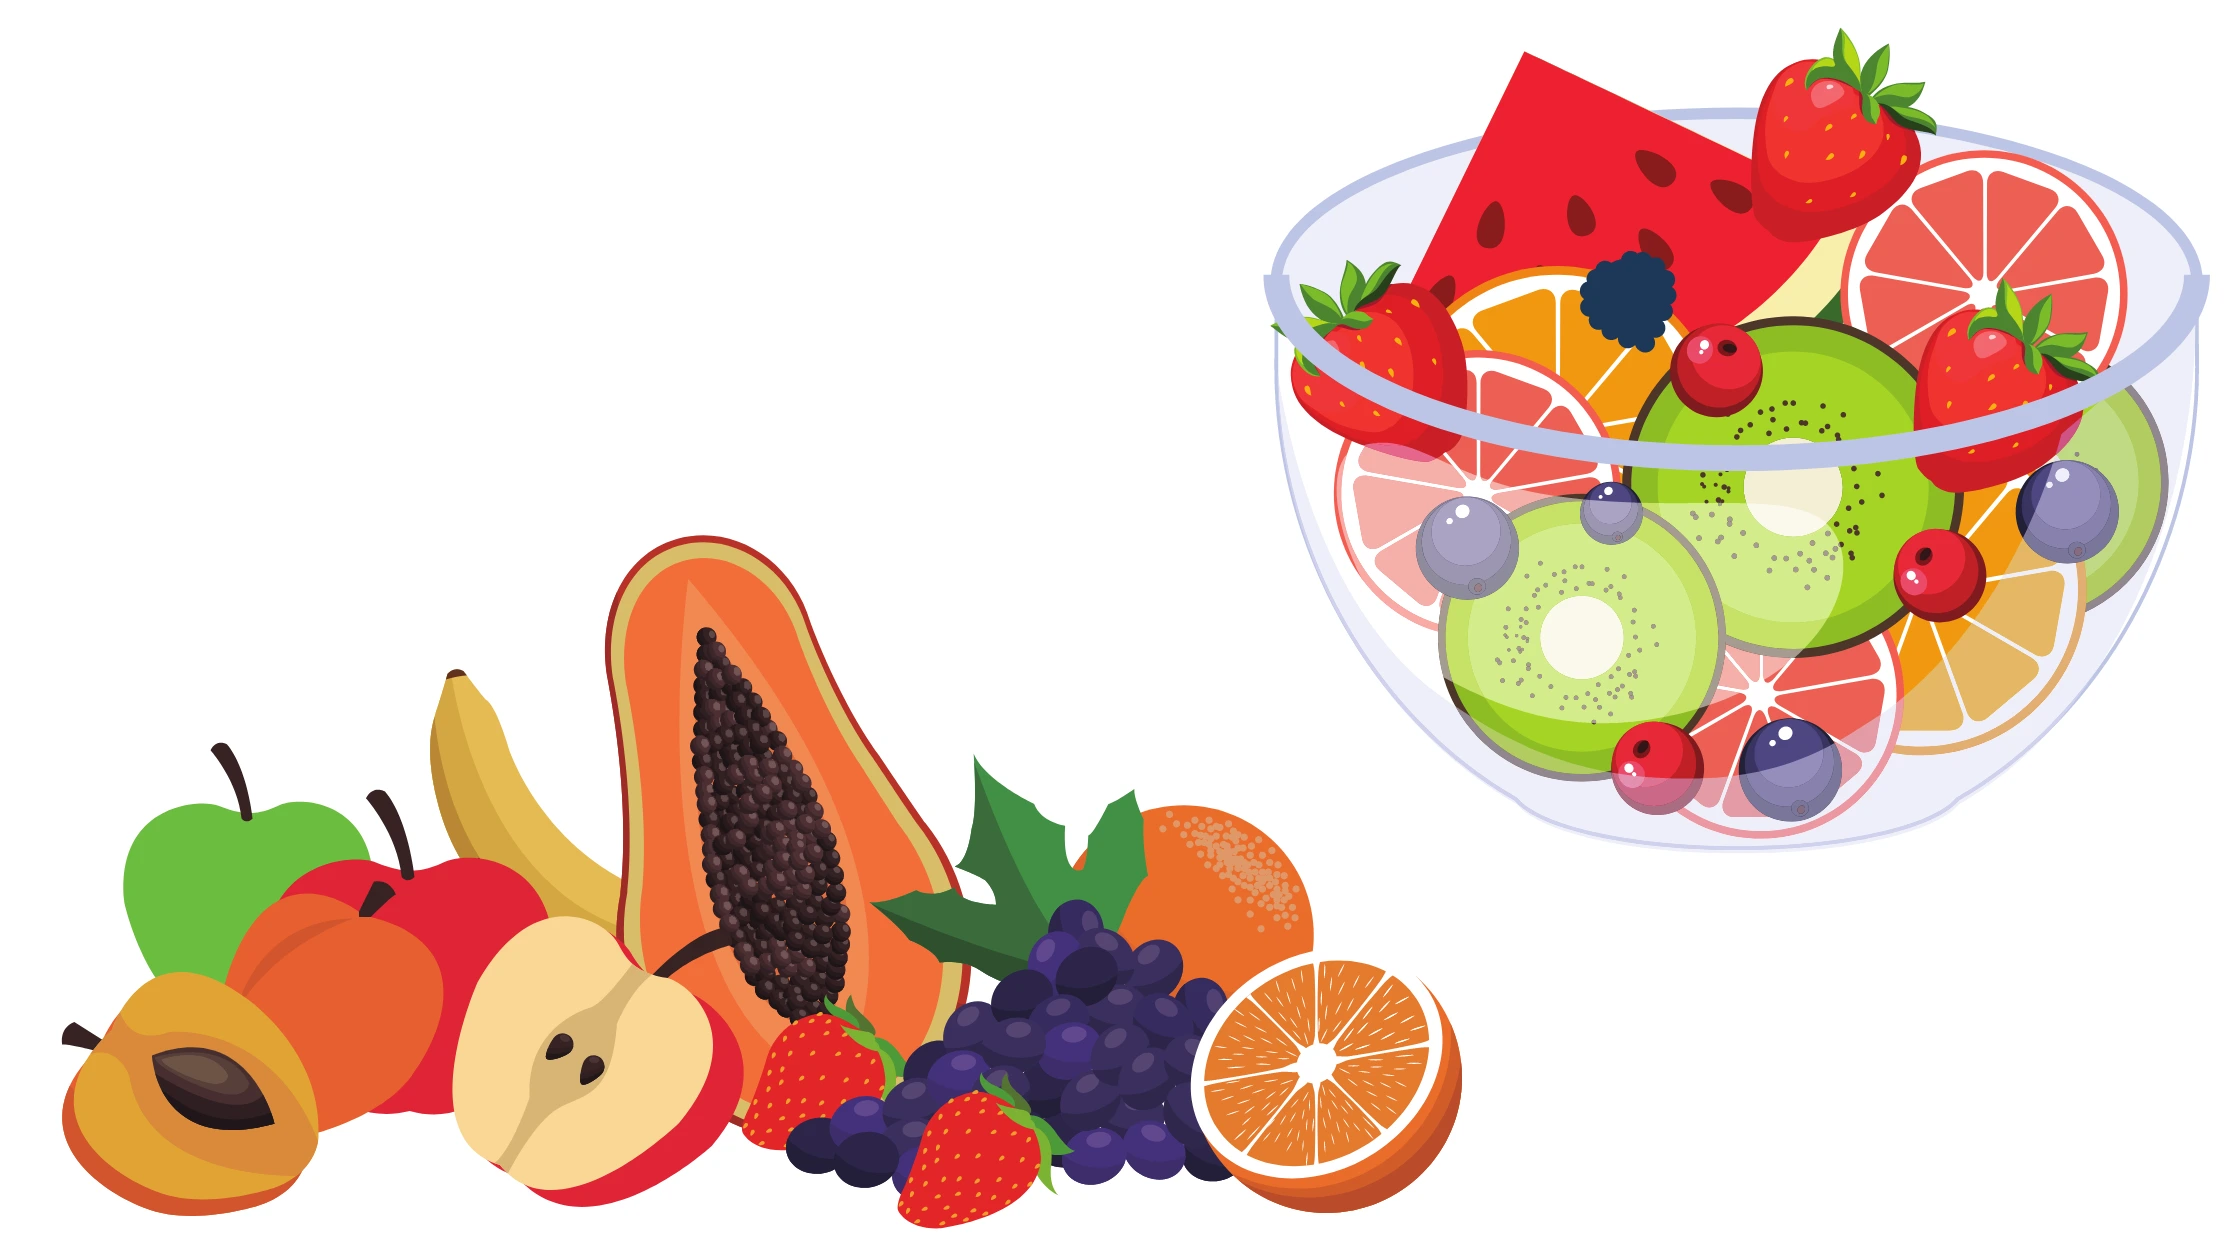 la frutta è ricca di fitonutrienti e antiossidanti, ma anche zuccheri buoni